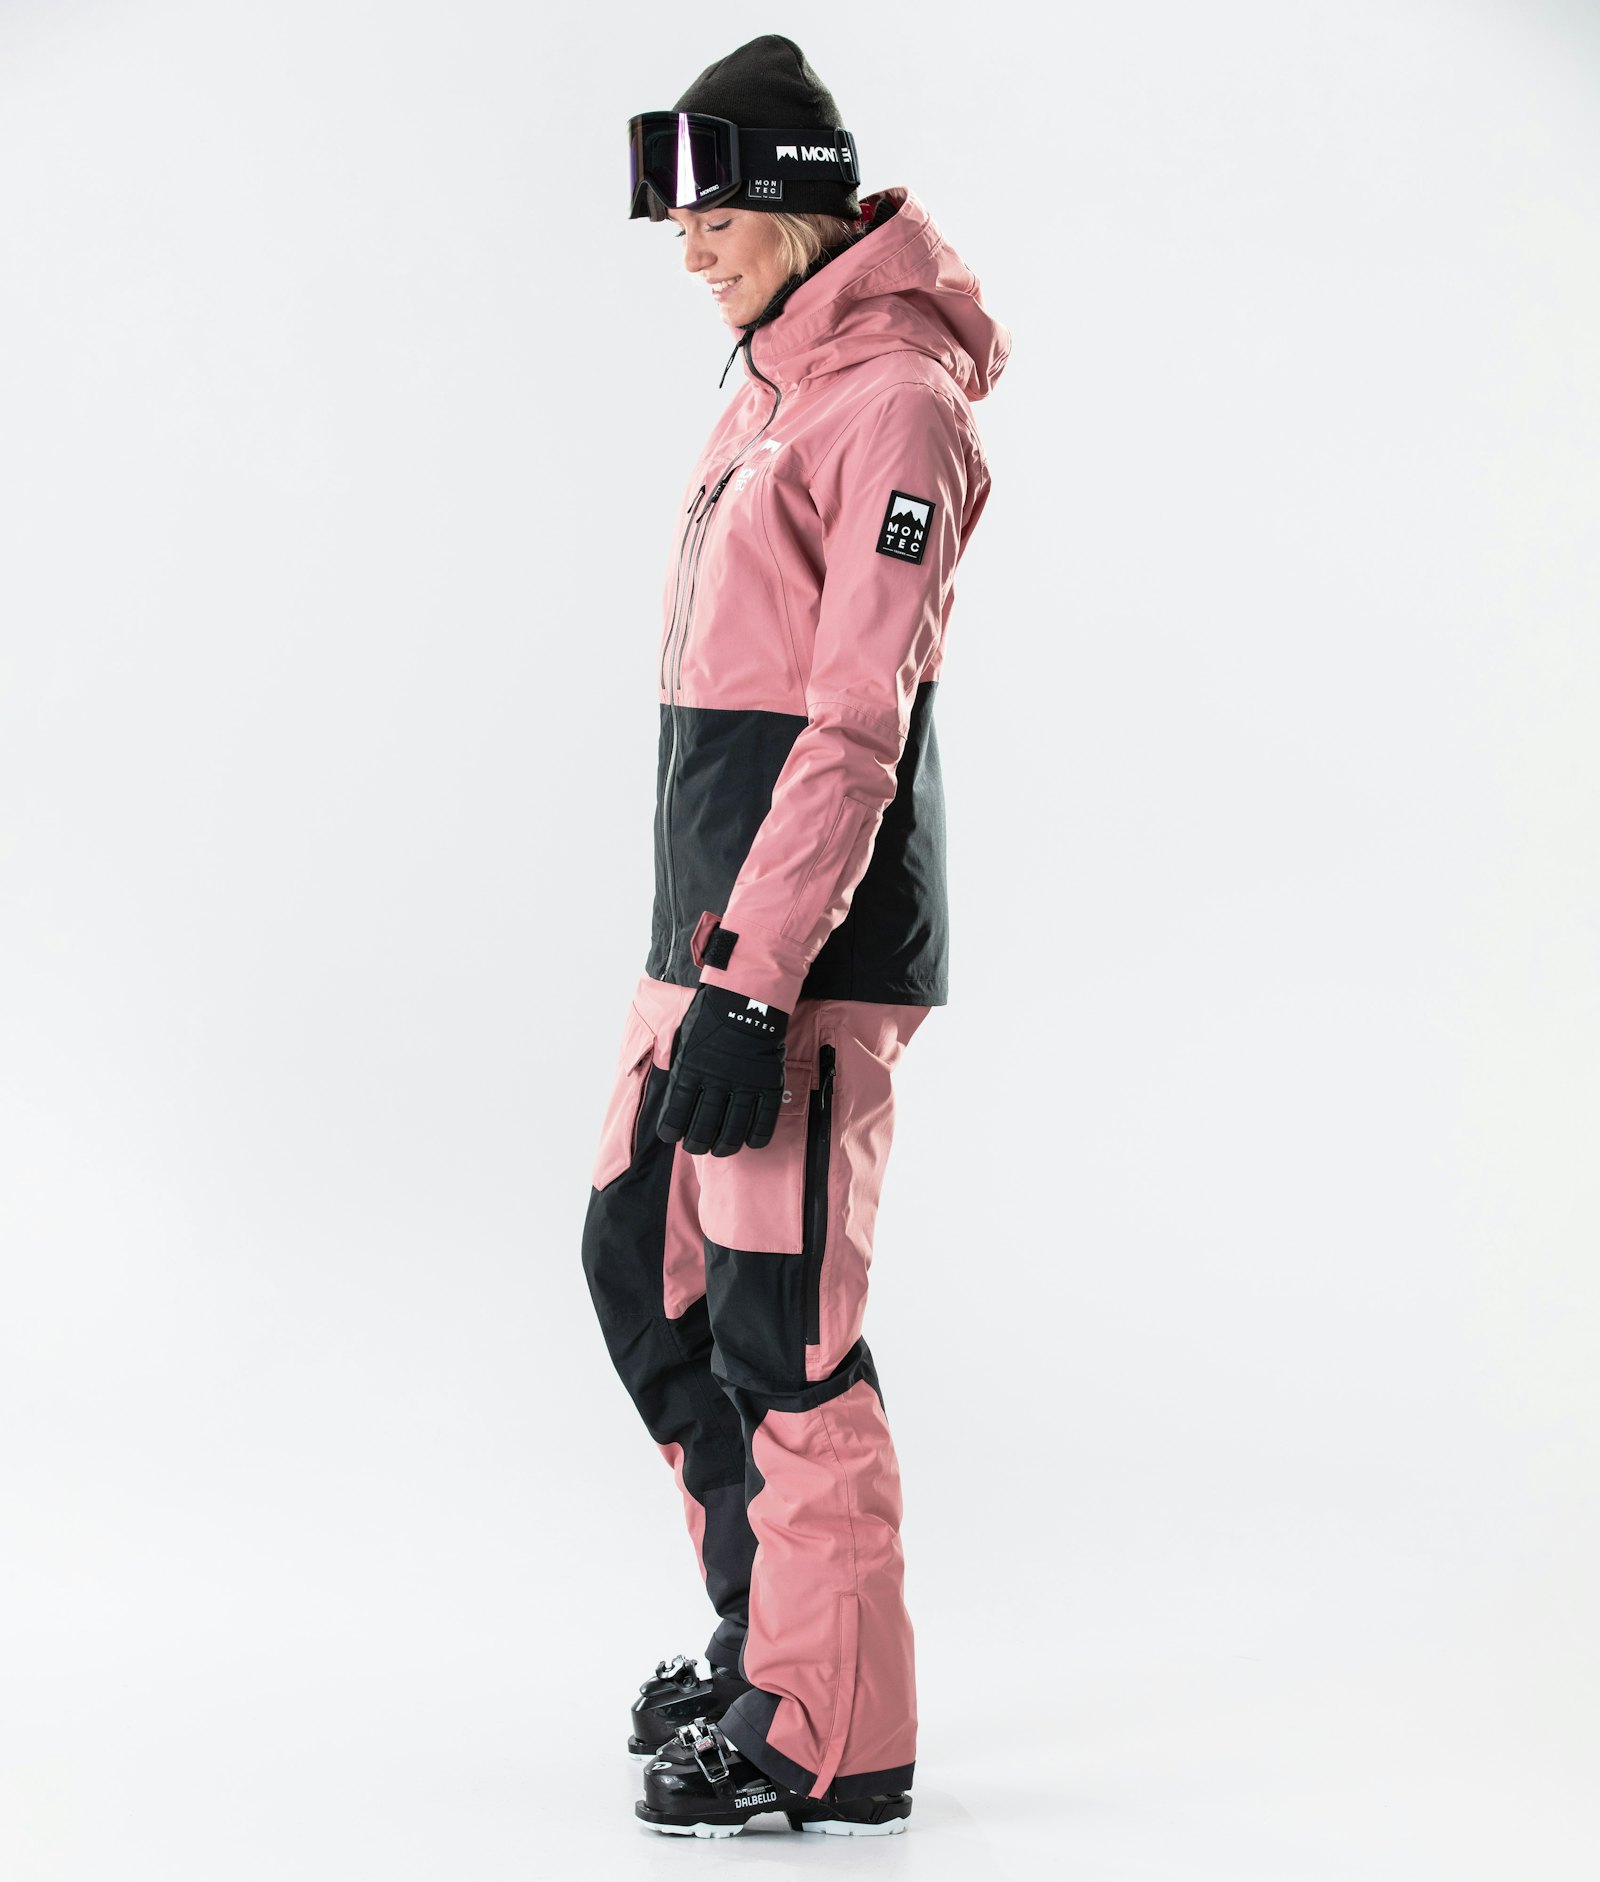 Moss W 2020 Lyžařská Bunda Dámské Pink/Black